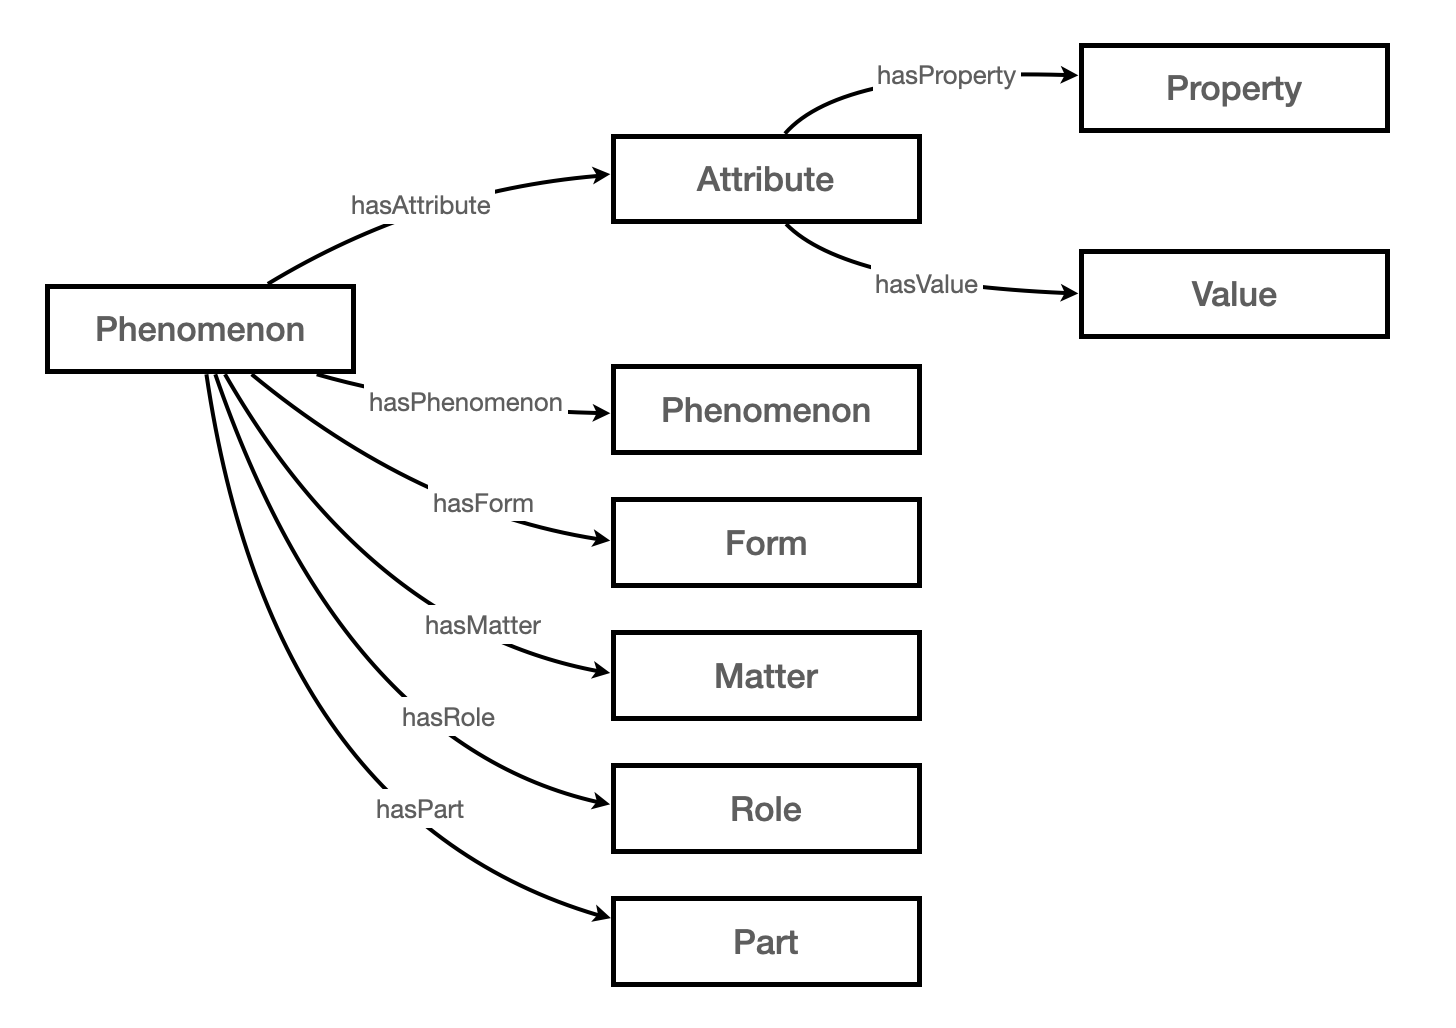 diagram showing pre-defined phenomenon attributes